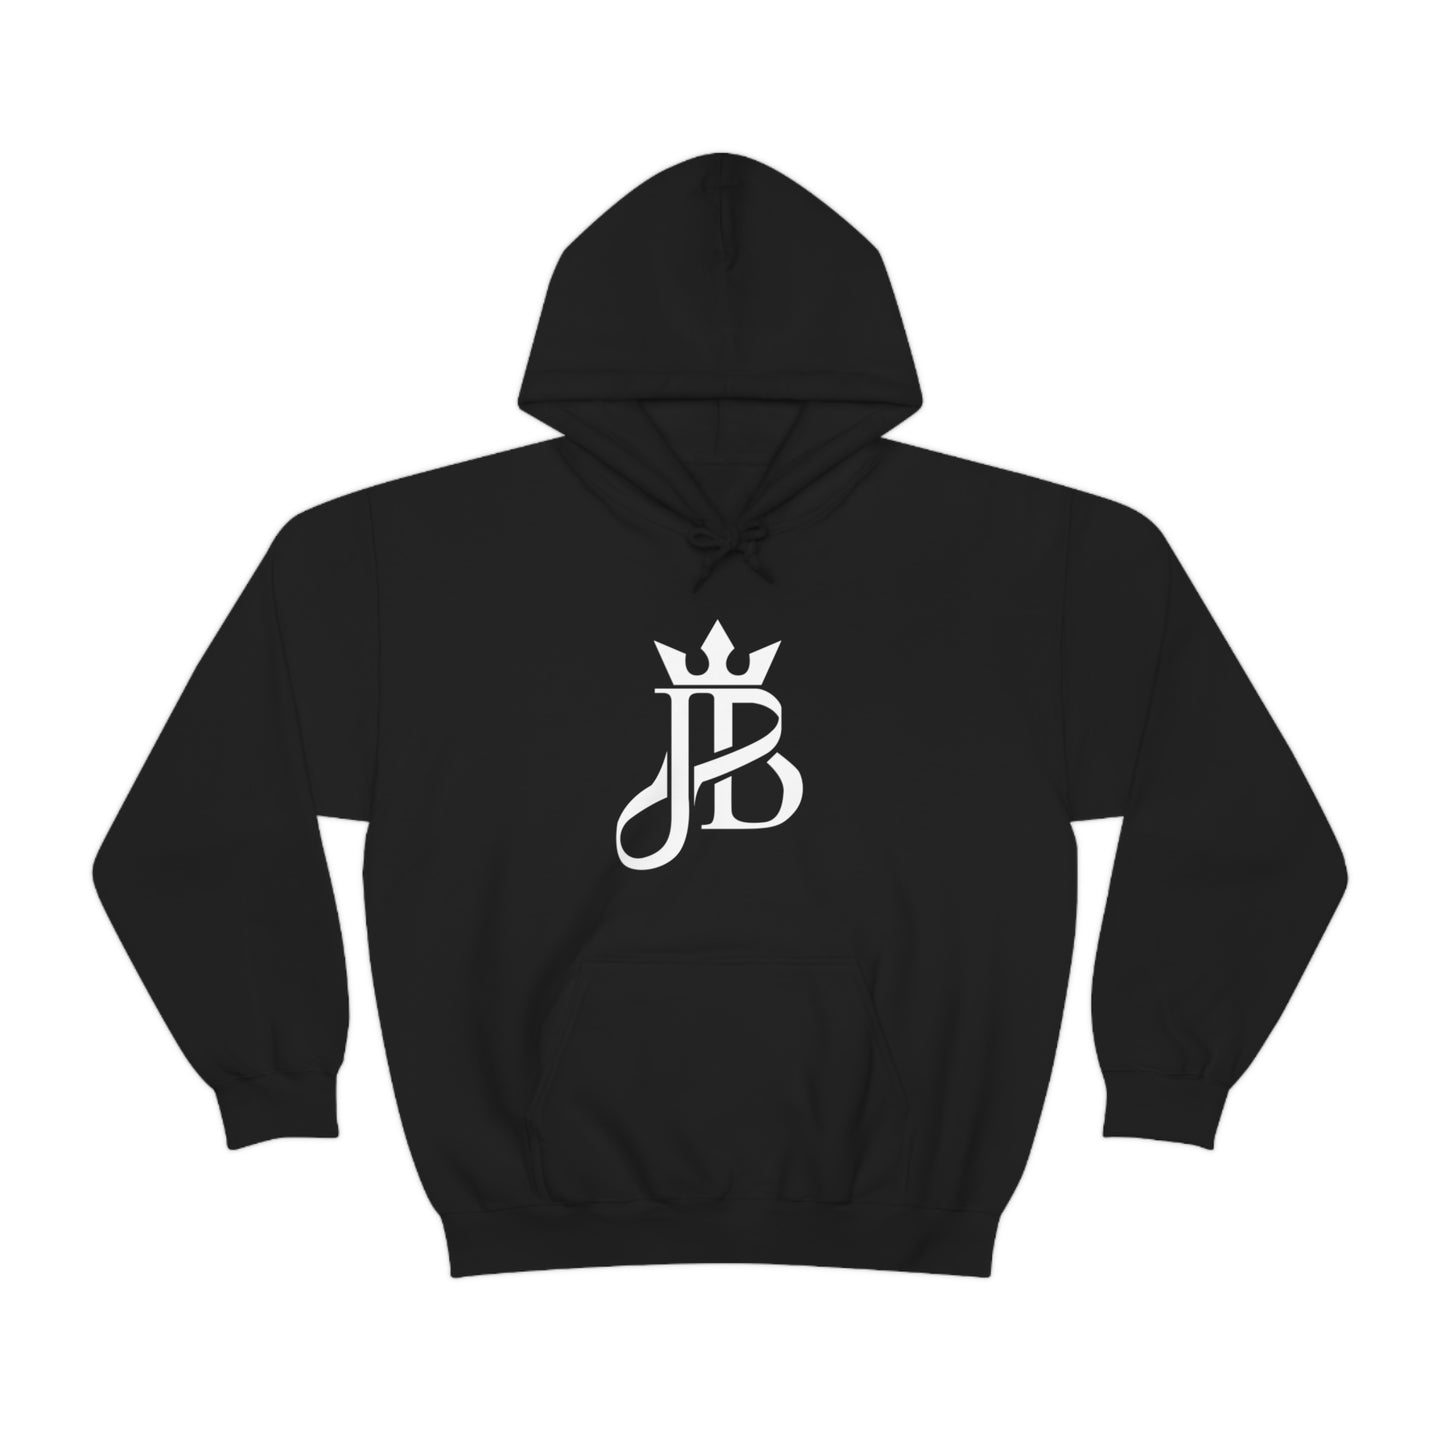 Justice Bice "JB" Hoodie